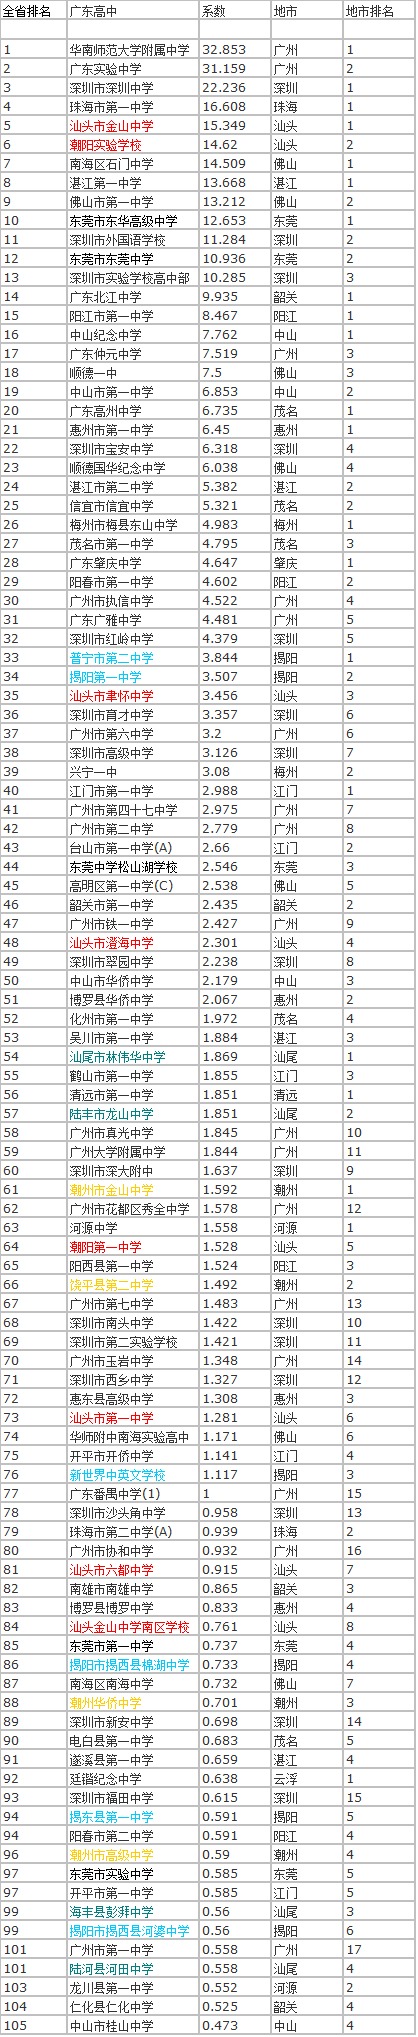 2017广东省中学排名 2017广东省初中排名 2017广东重点中学排行榜